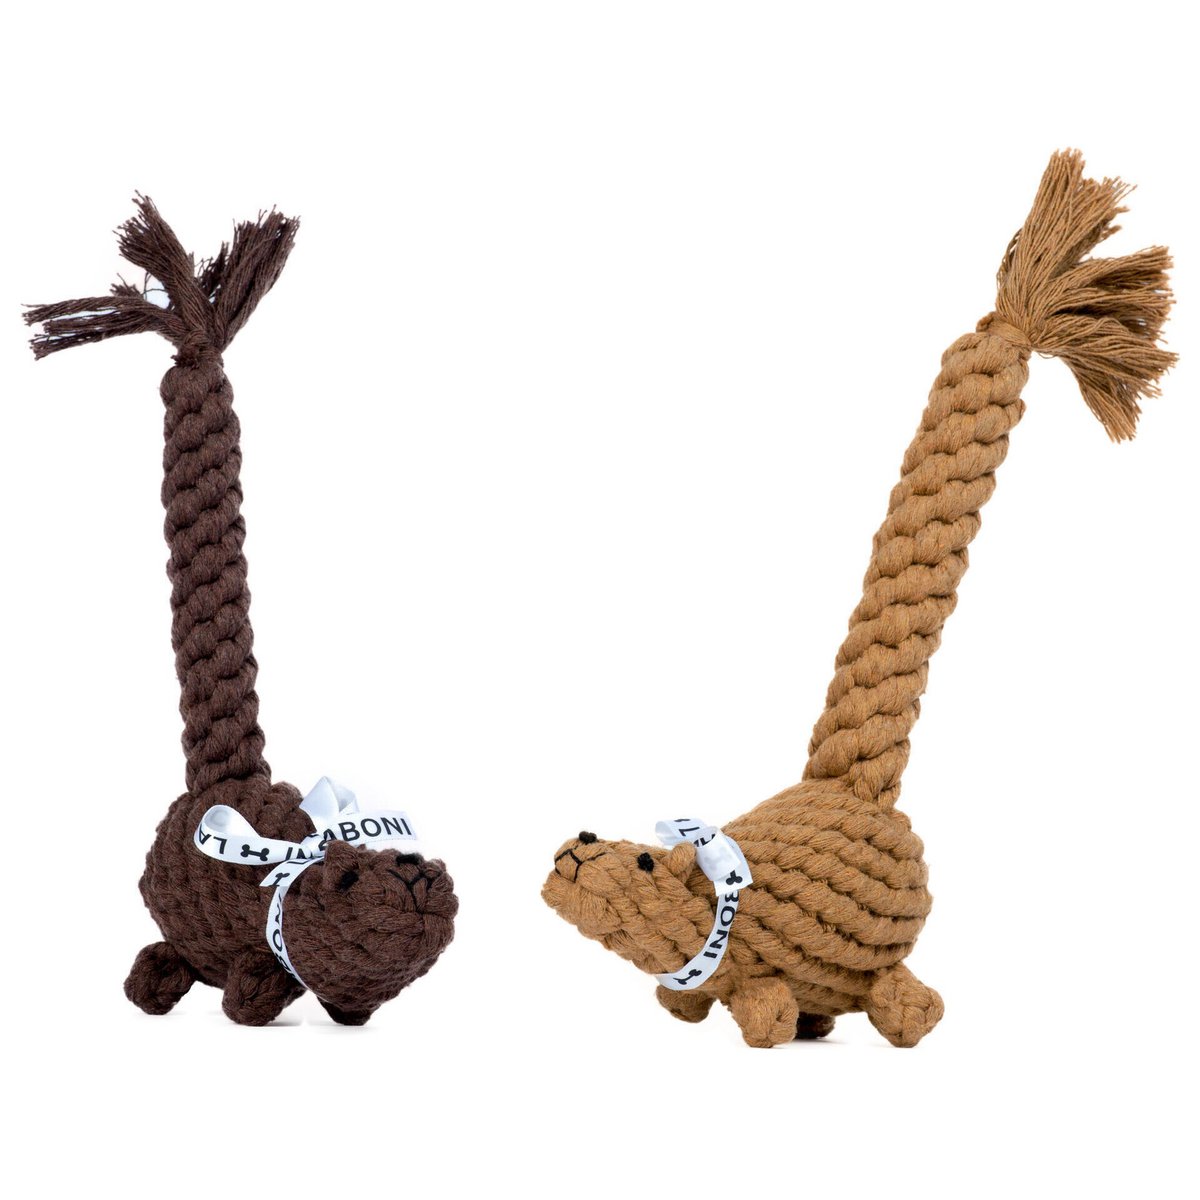 Eddie Eichhorn Rope Toy - Dog Light Brown 13x6x24 cm